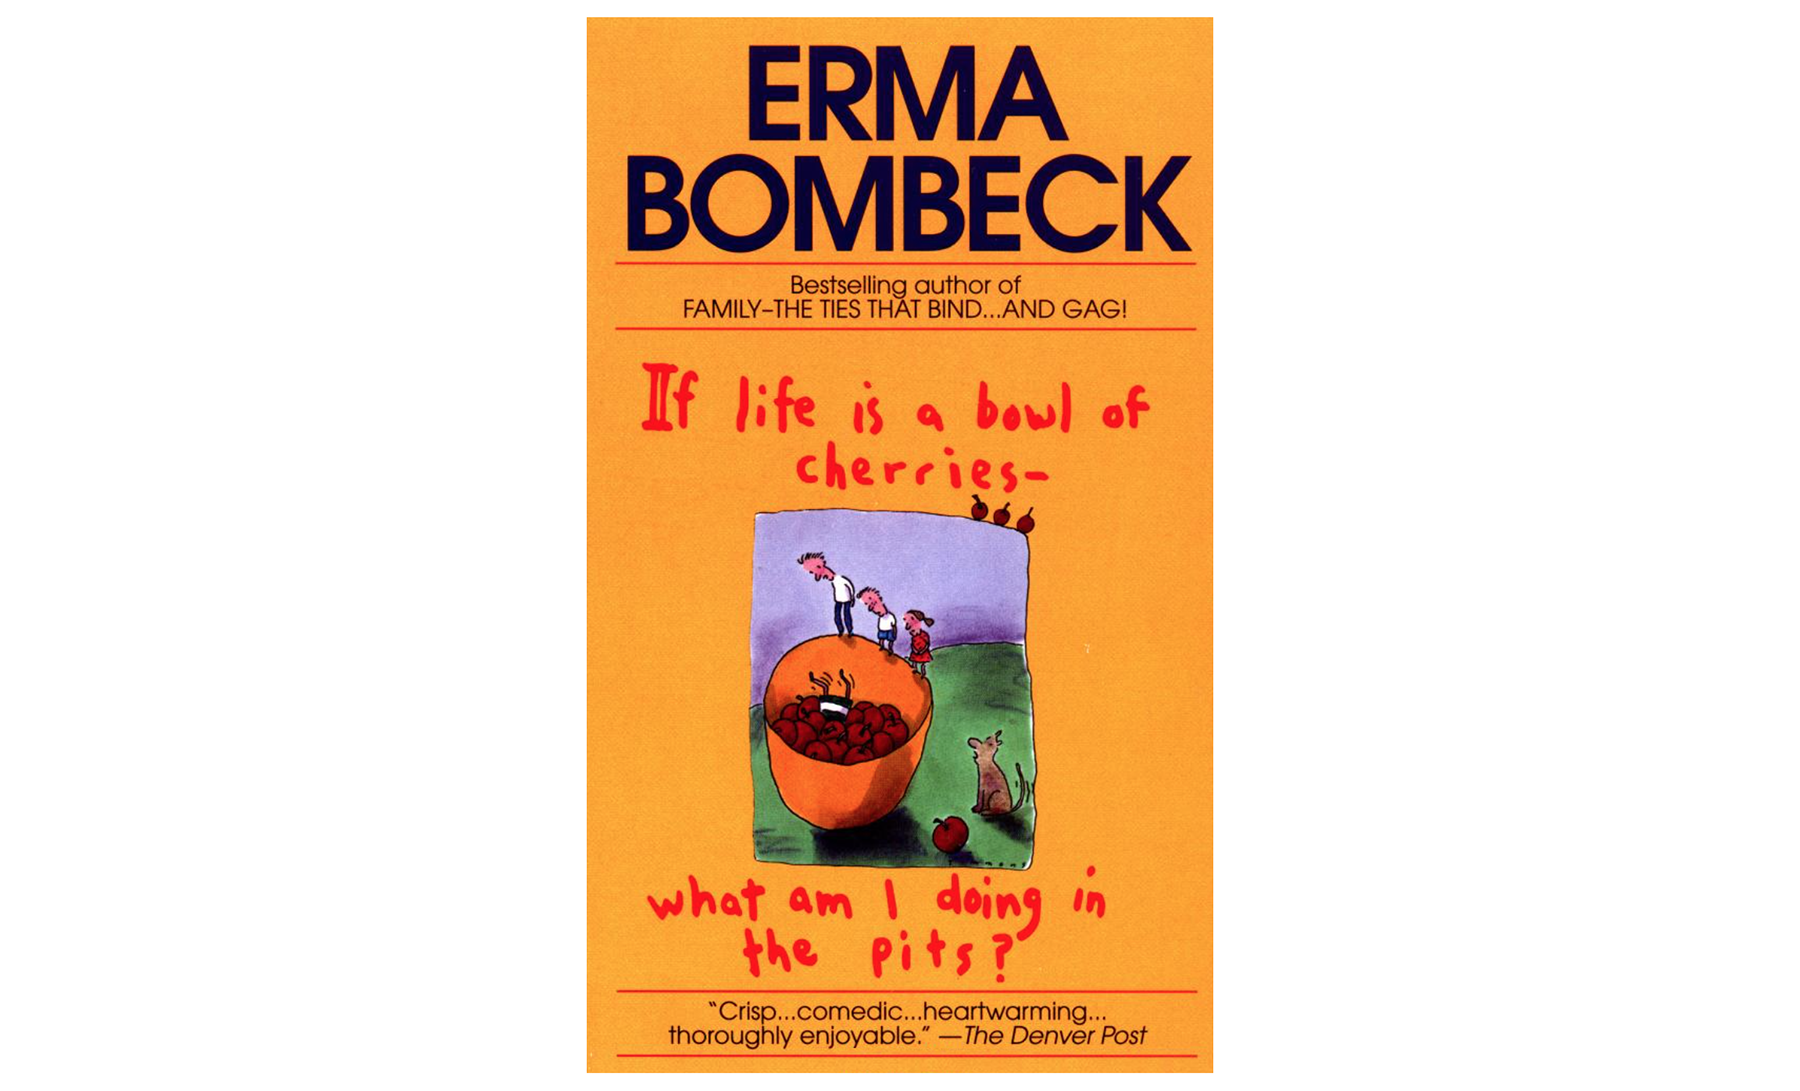 Dacă viața este un castron de cireșe, ce fac în gropi? de Erma Bombeck